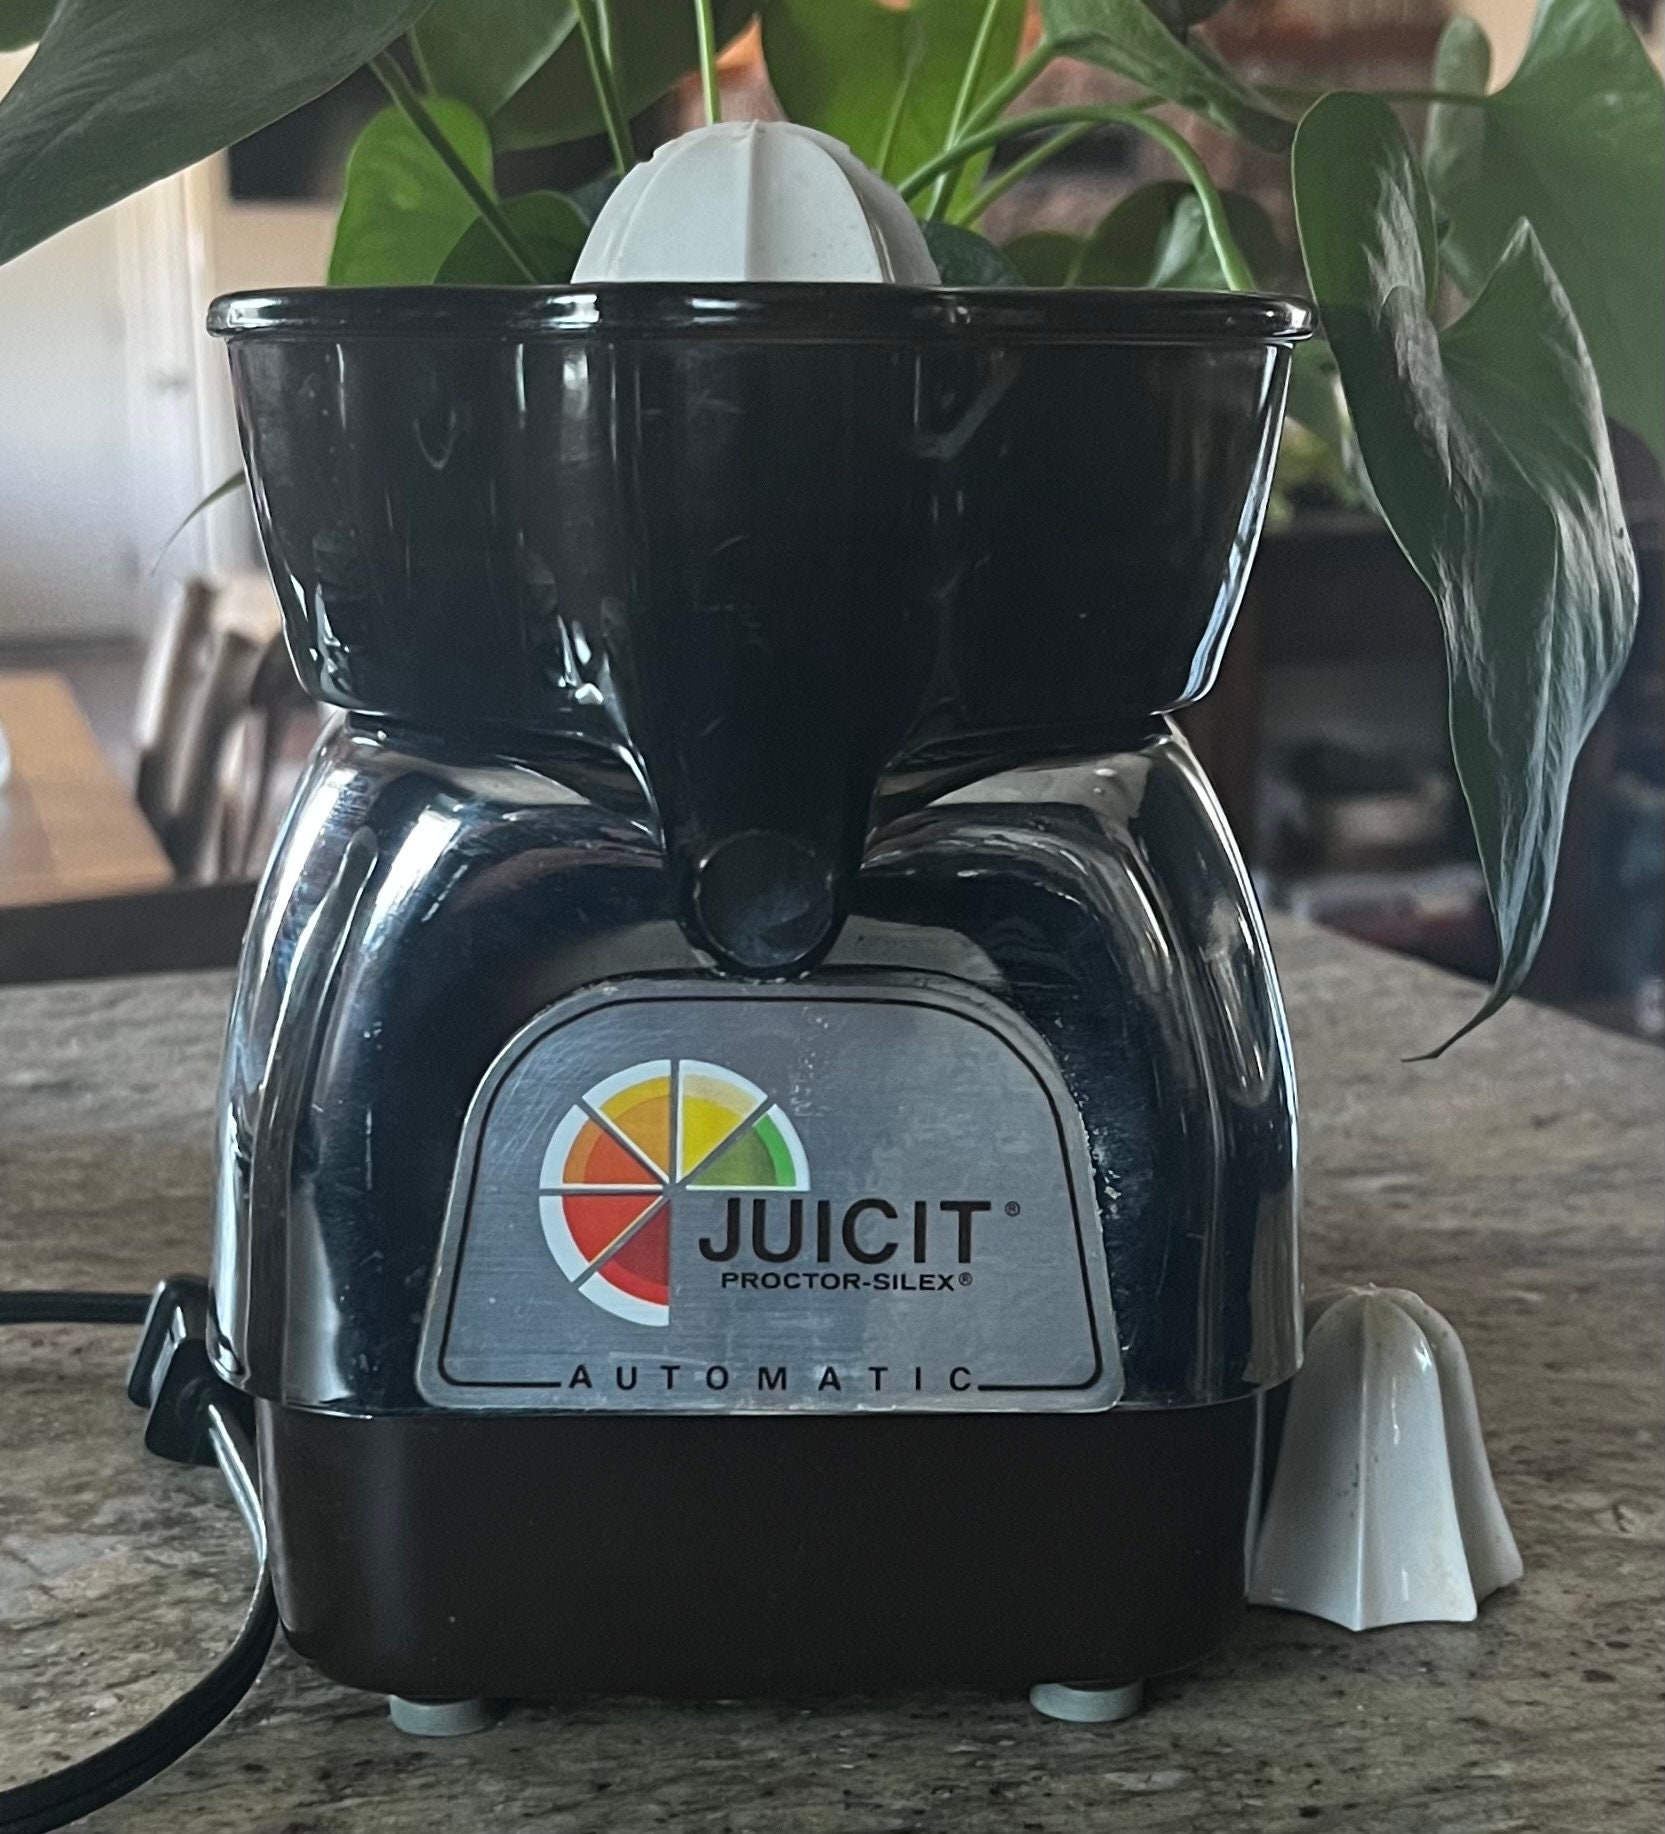 Proctor Silex Juicit Electric Citrus Juicer Machine for Orange